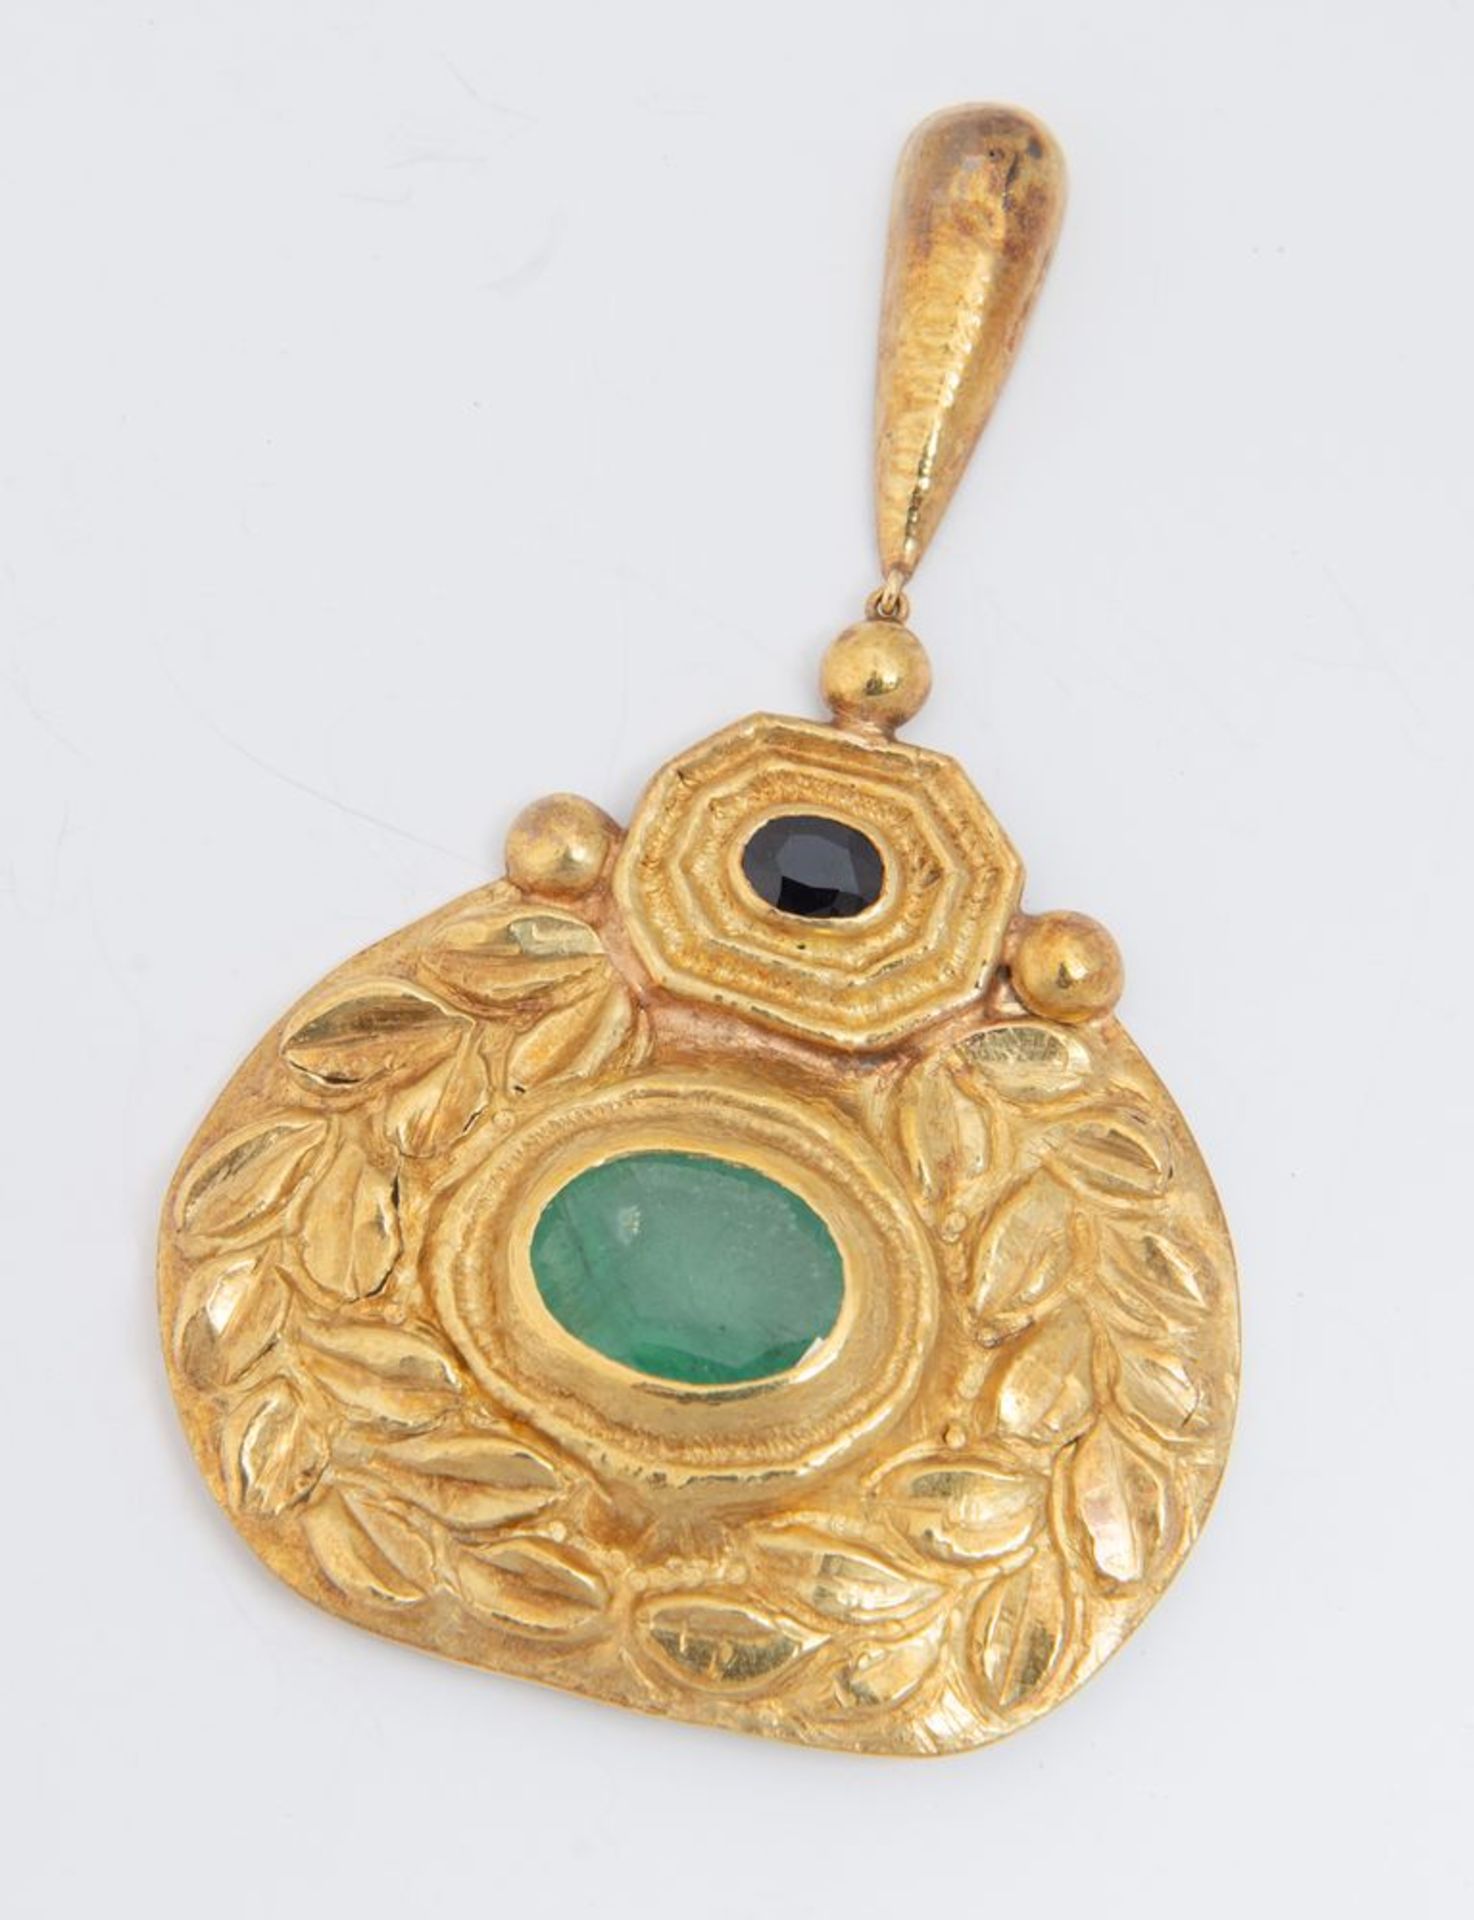 Pendente in oro, zaffiro e smeraldo.
Realizzato come un medaglione sbalzato e inciso a motivi vegeta - Bild 3 aus 3